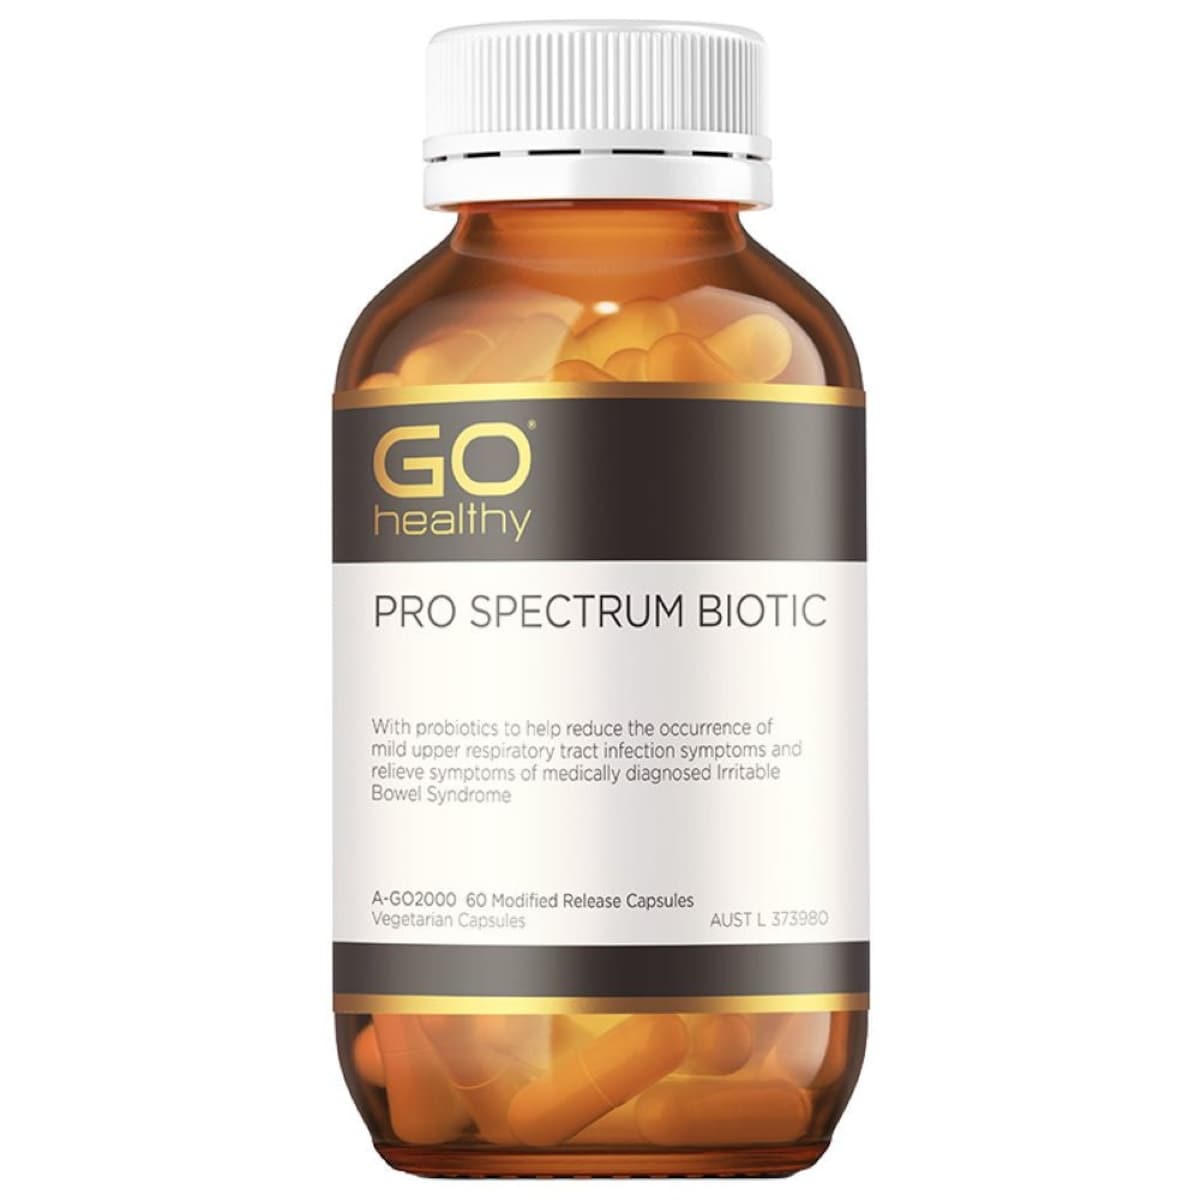 GO Healthy Pro Spectrum Biotic 60 Capsules